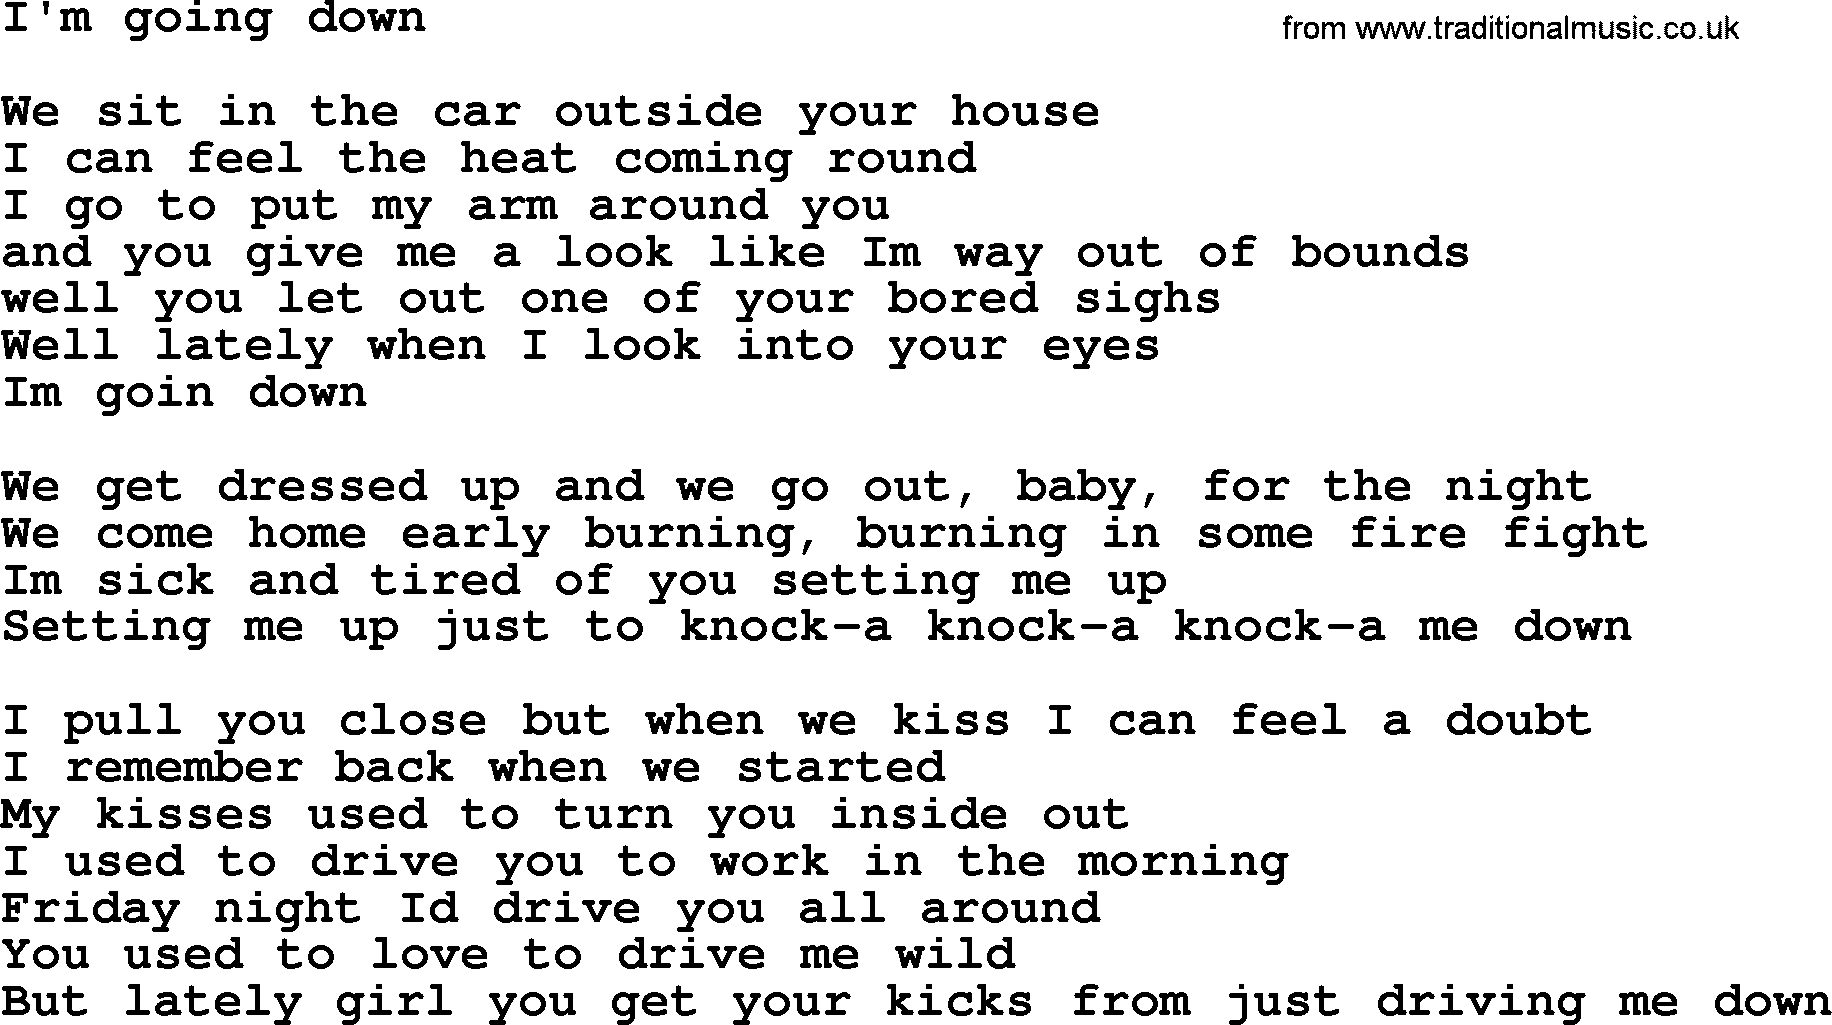 Bruce Springsteen song: I'm Going Down lyrics